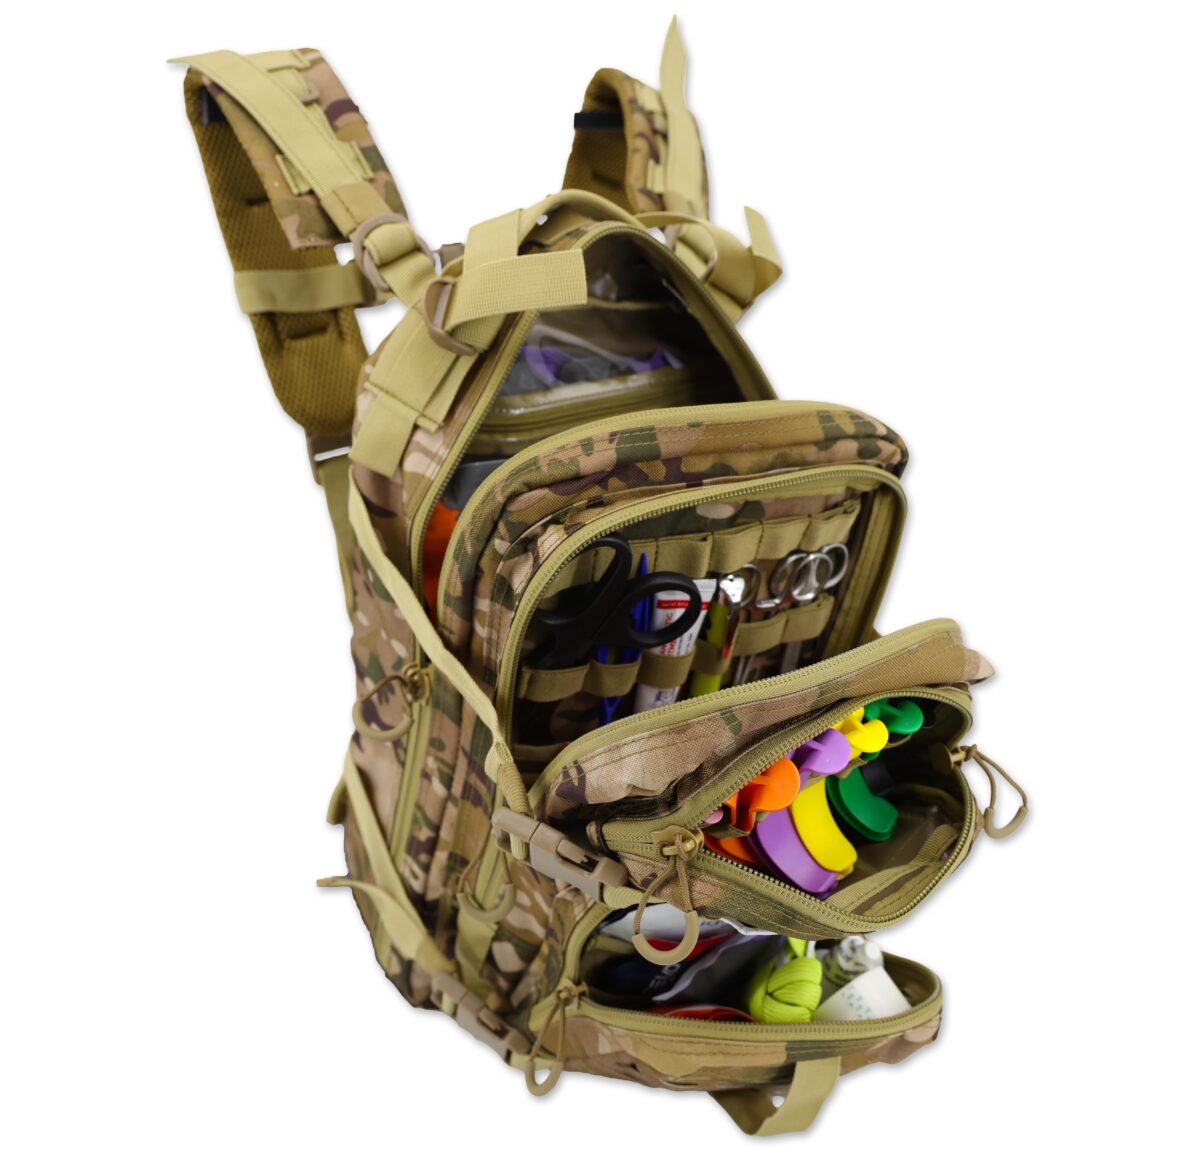 small assault tactical first responder tac med emt medic stocked backpack kit